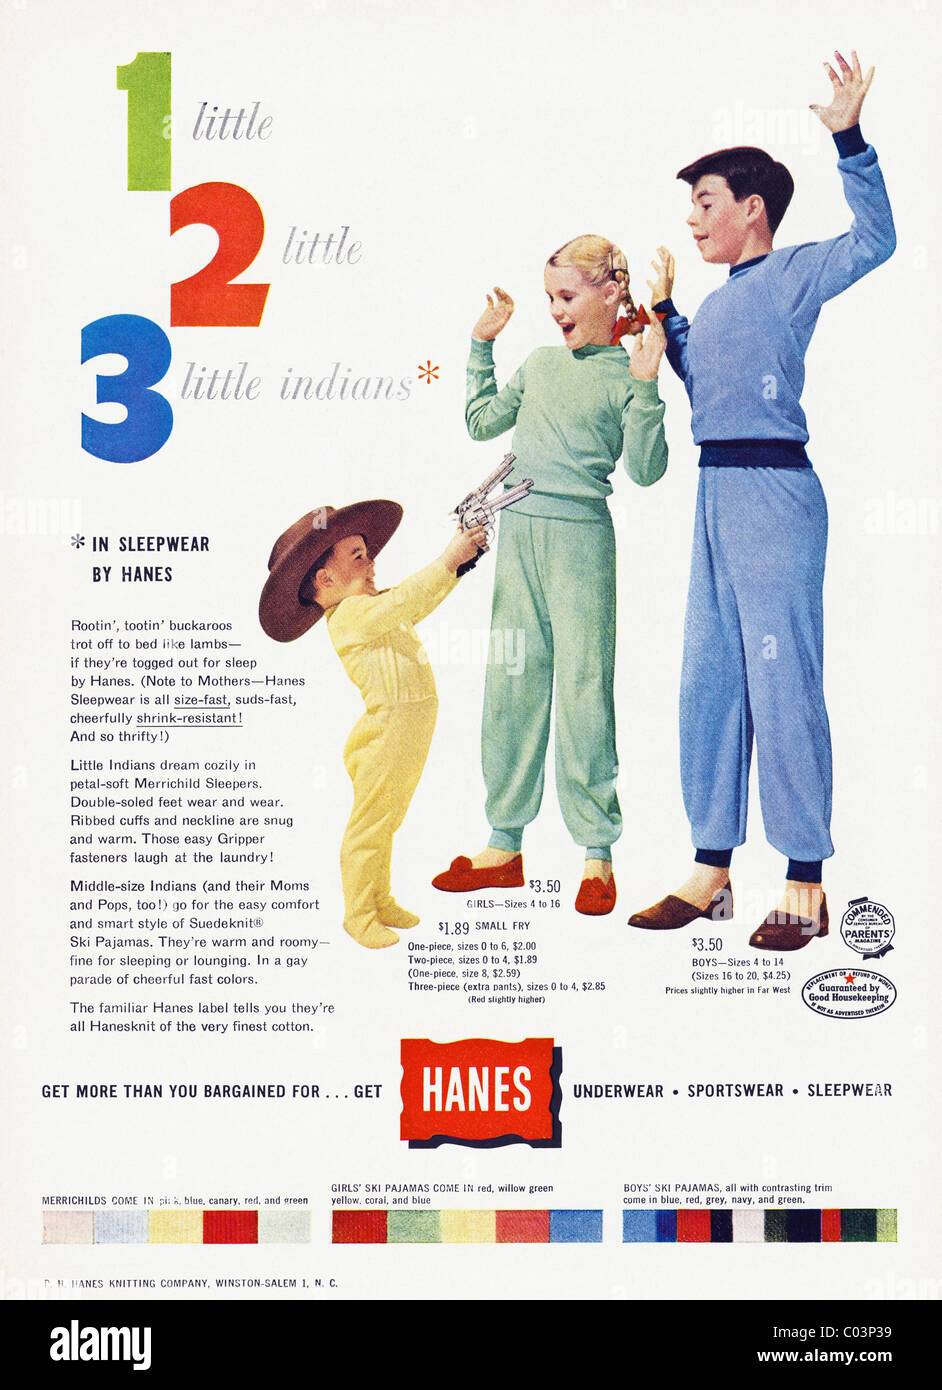 Consumerism In The 1950s